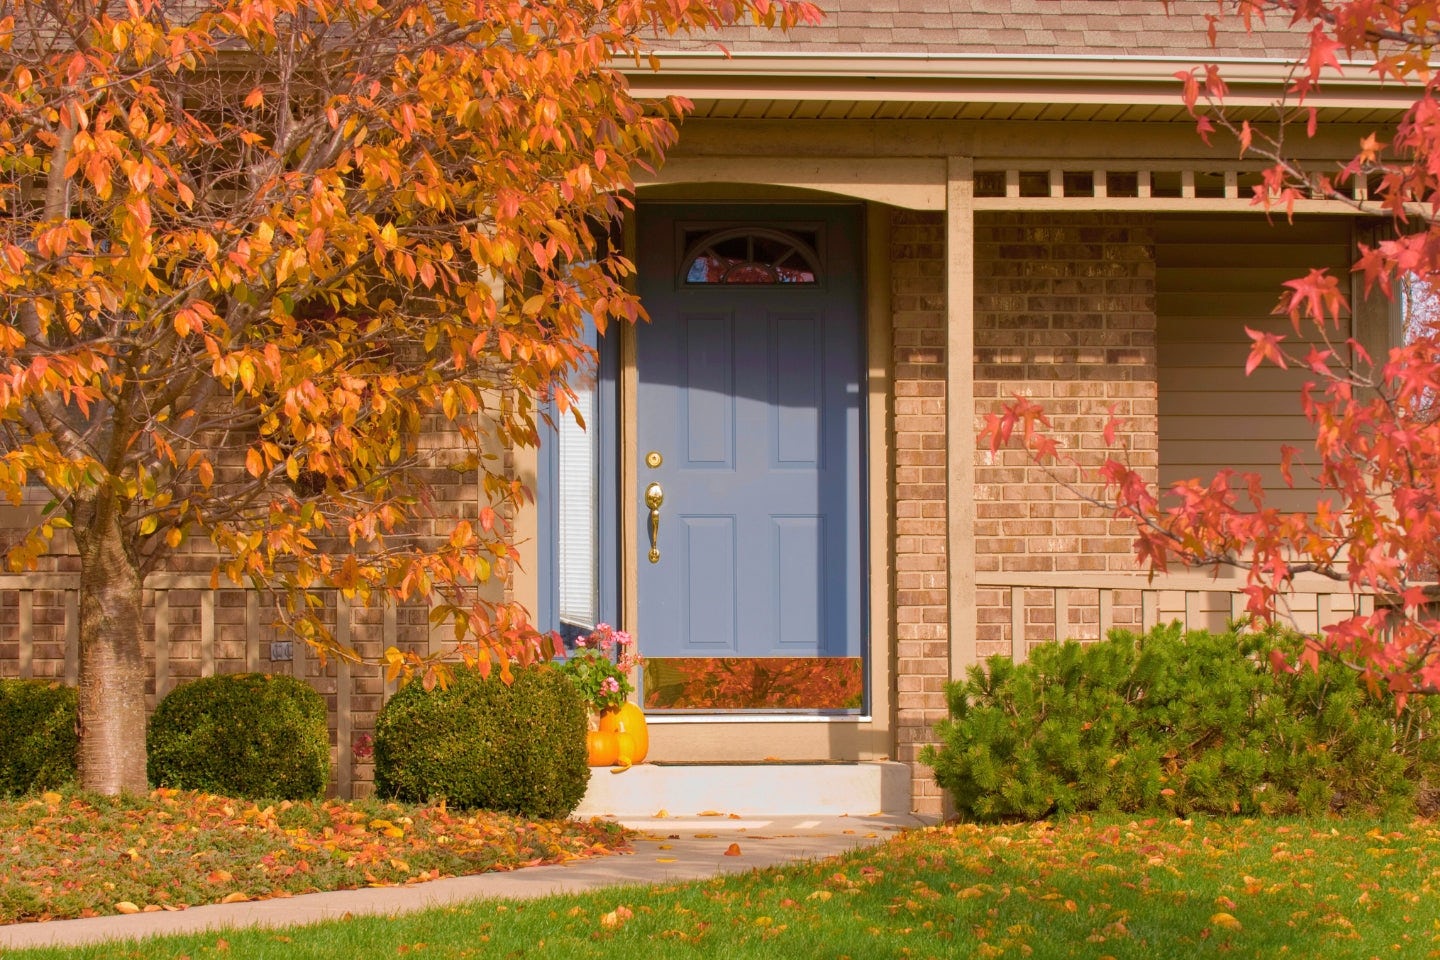 Porte d'entrée bleue d'une maison de briques entourée d'arbres aux feuilles oranges et rouges. Des feuilles sont tombées sur la pelouse et les buissons verts.